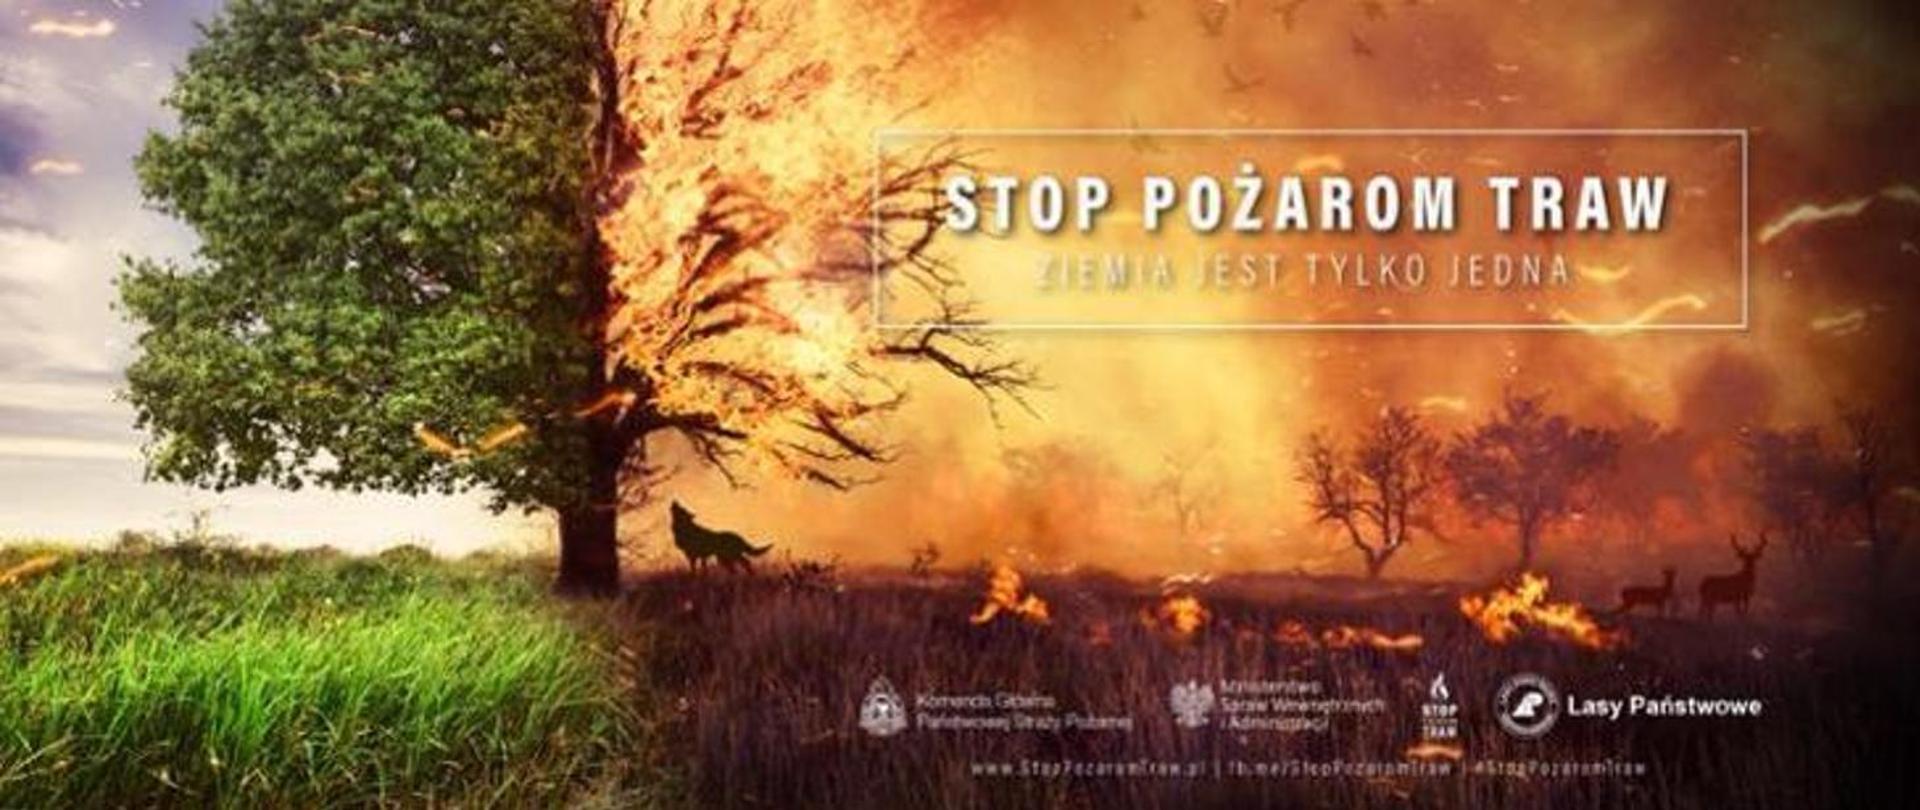 Kampania społeczna Państwowej Straży Pożarnej „Stop Pożarom Traw” - na zdjęciu płonące drzewo i łąka